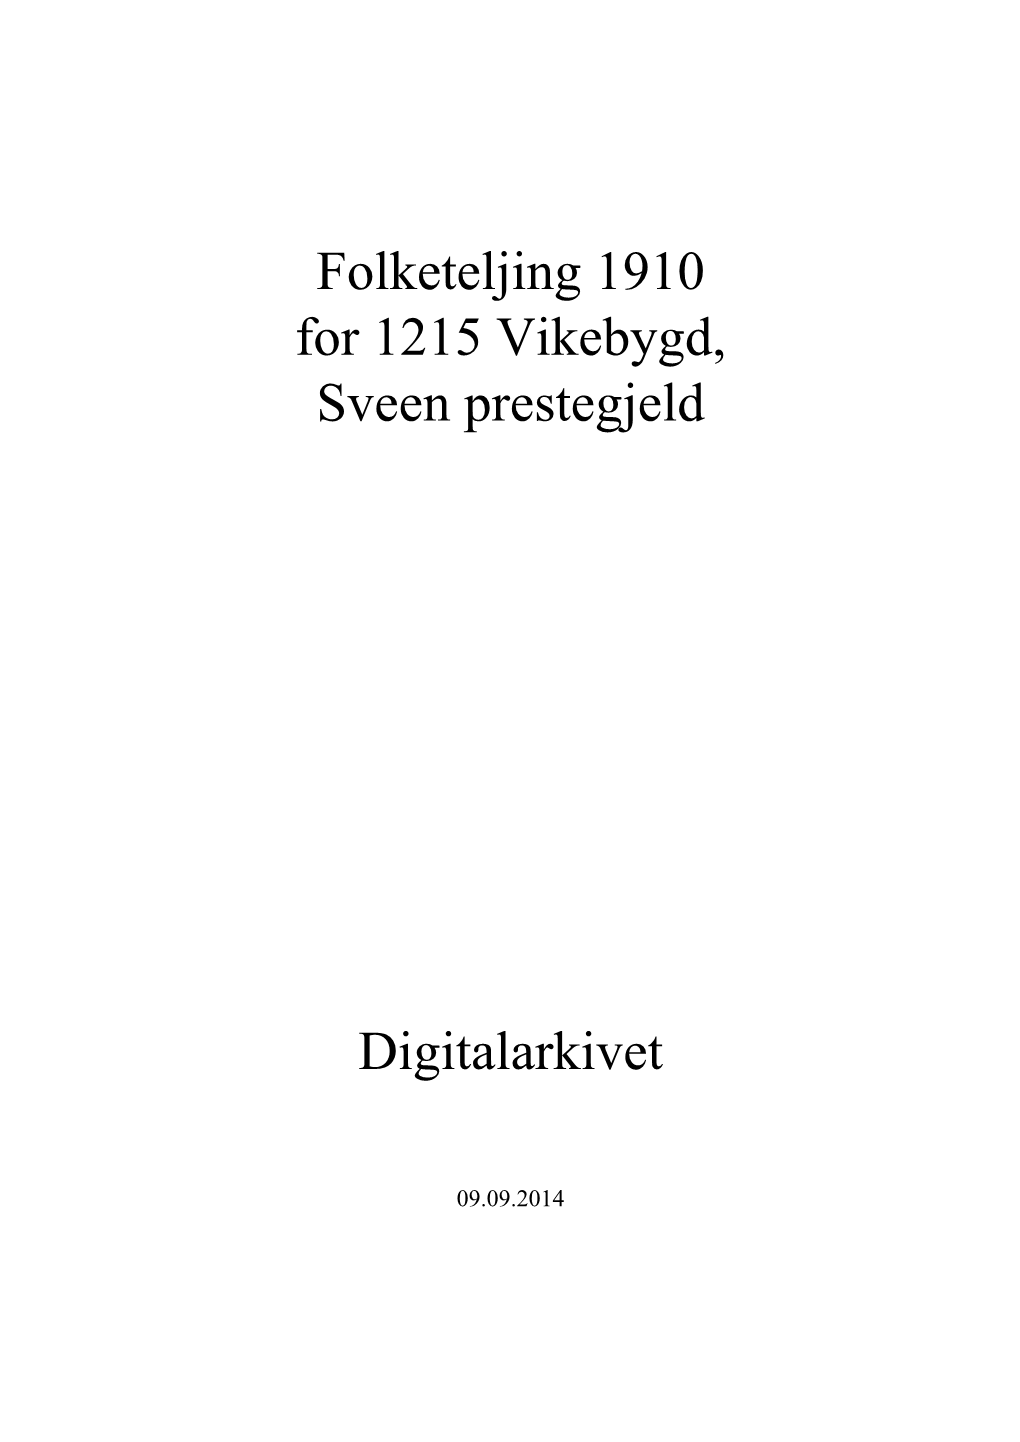 Folketeljing 1910 for 1215 Vikebygd, Sveen Prestegjeld Digitalarkivet